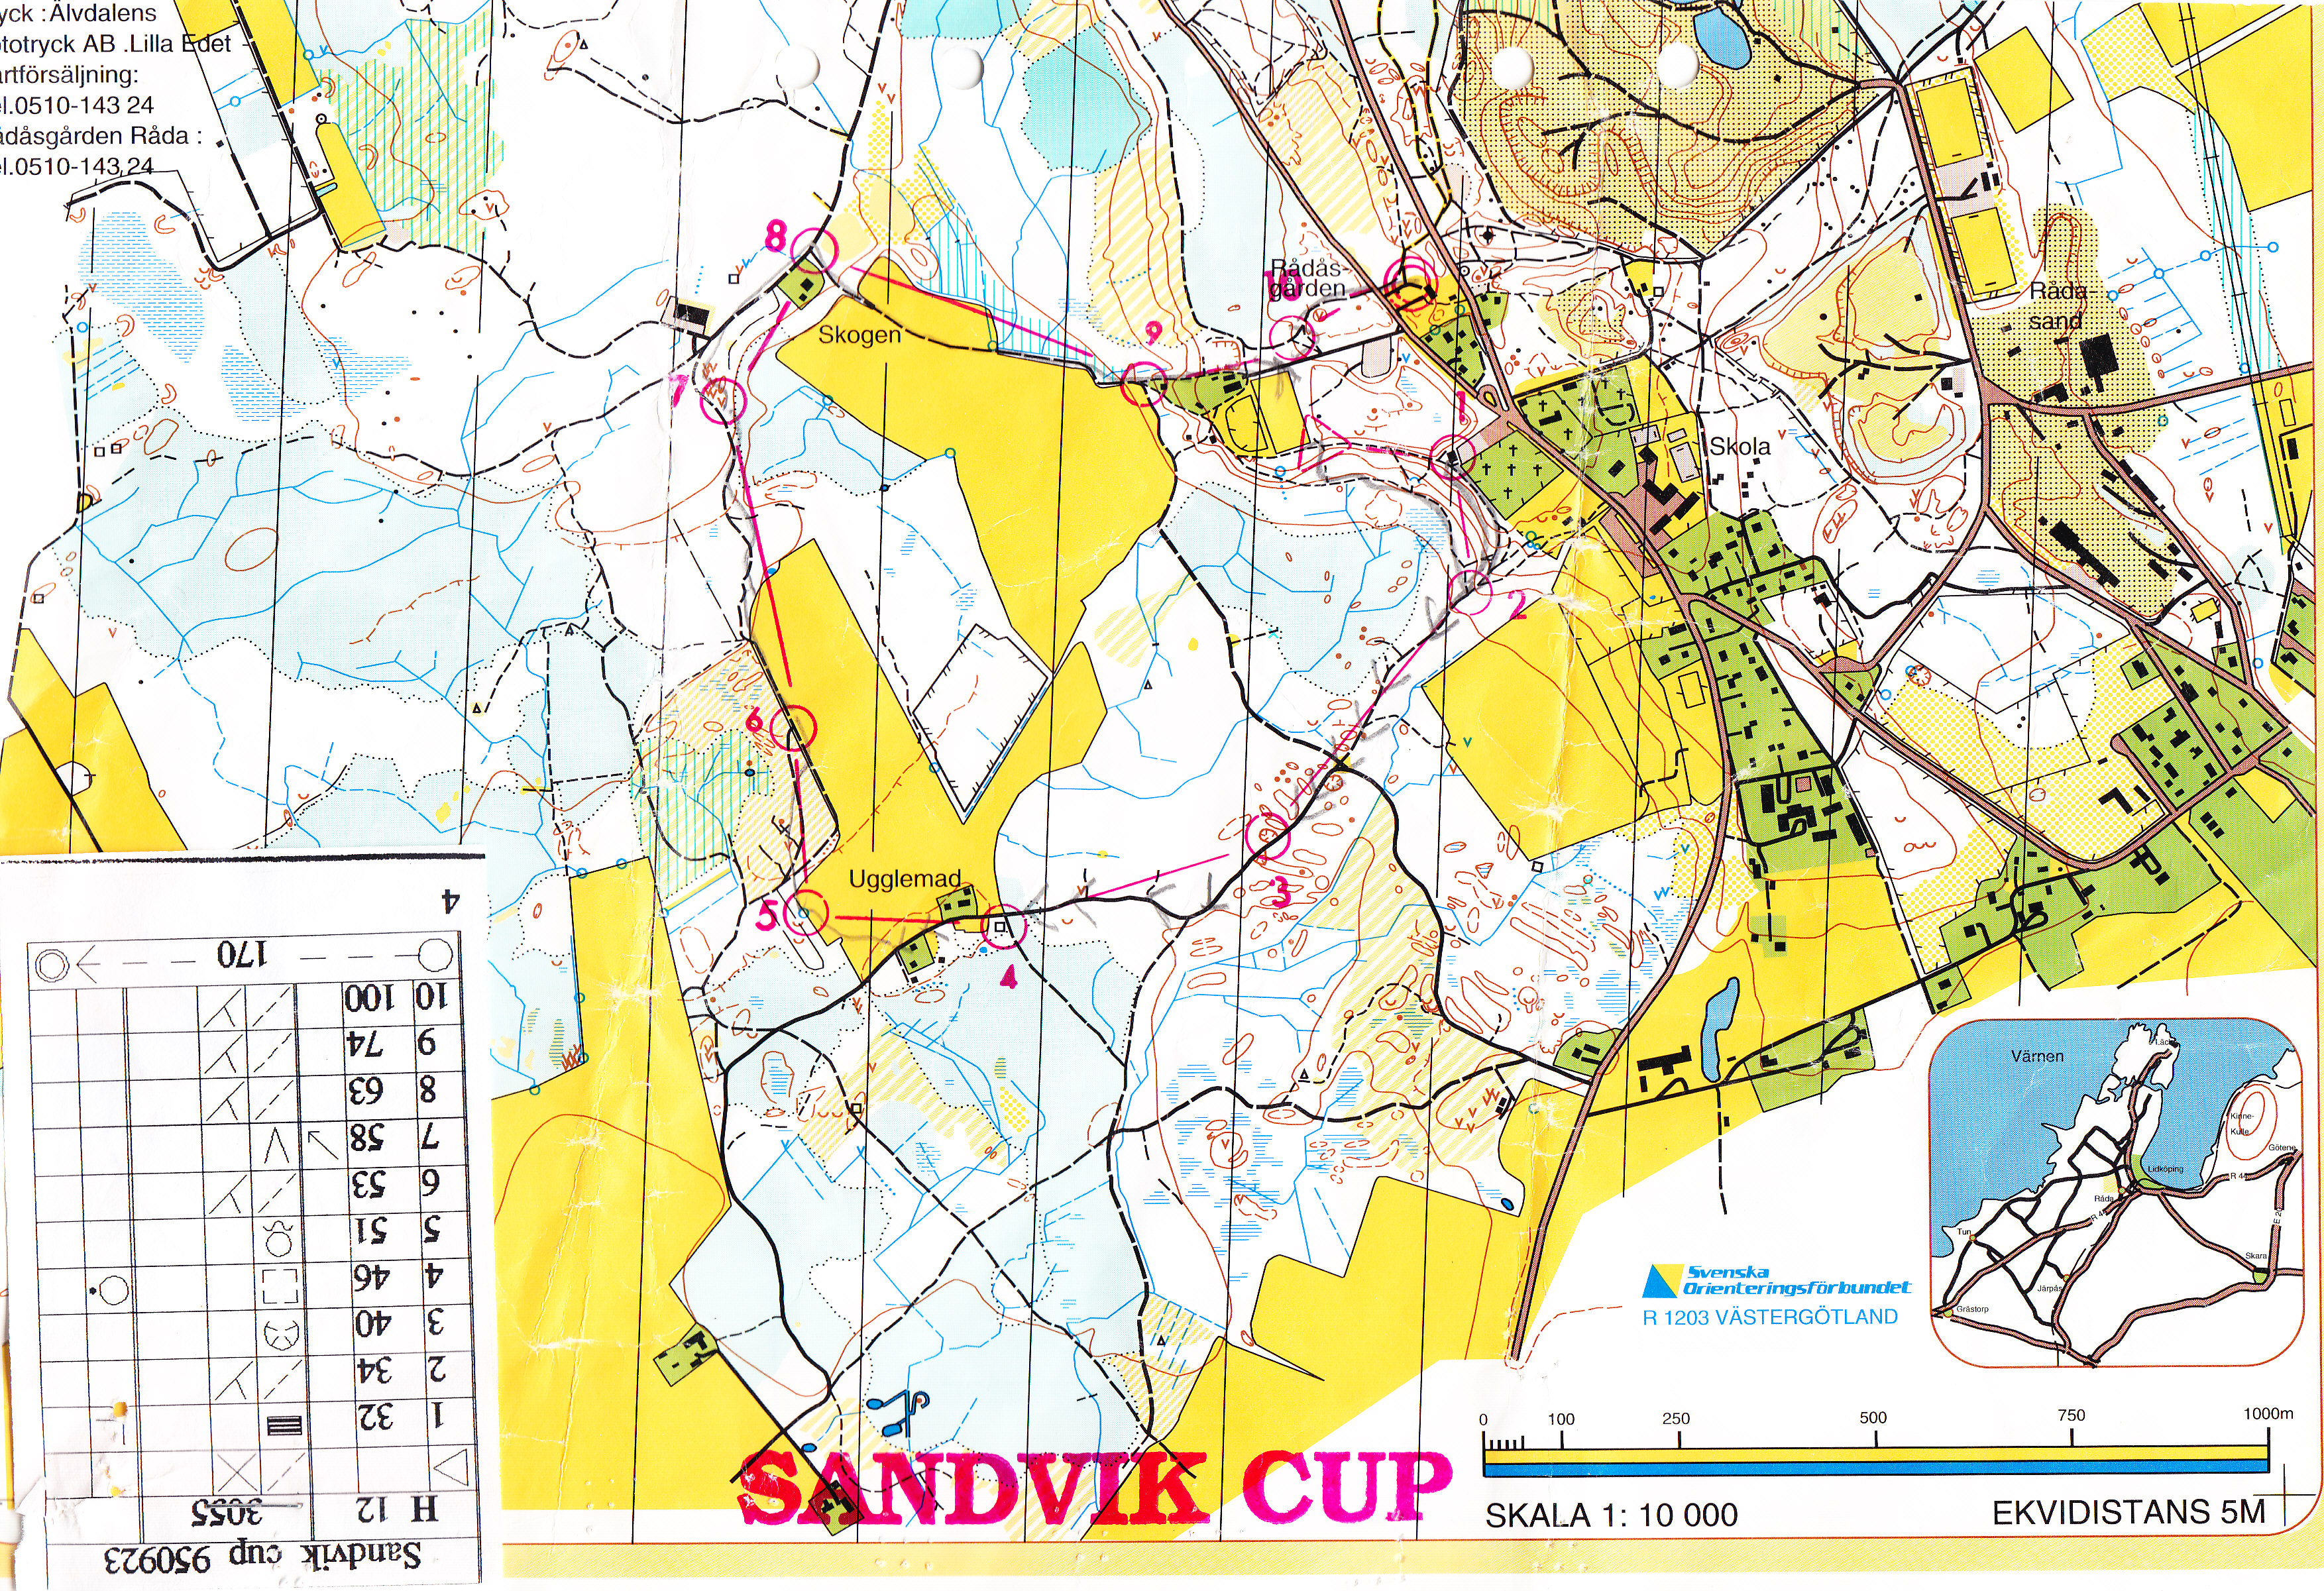 Sandvik Cup (23/09/1995)